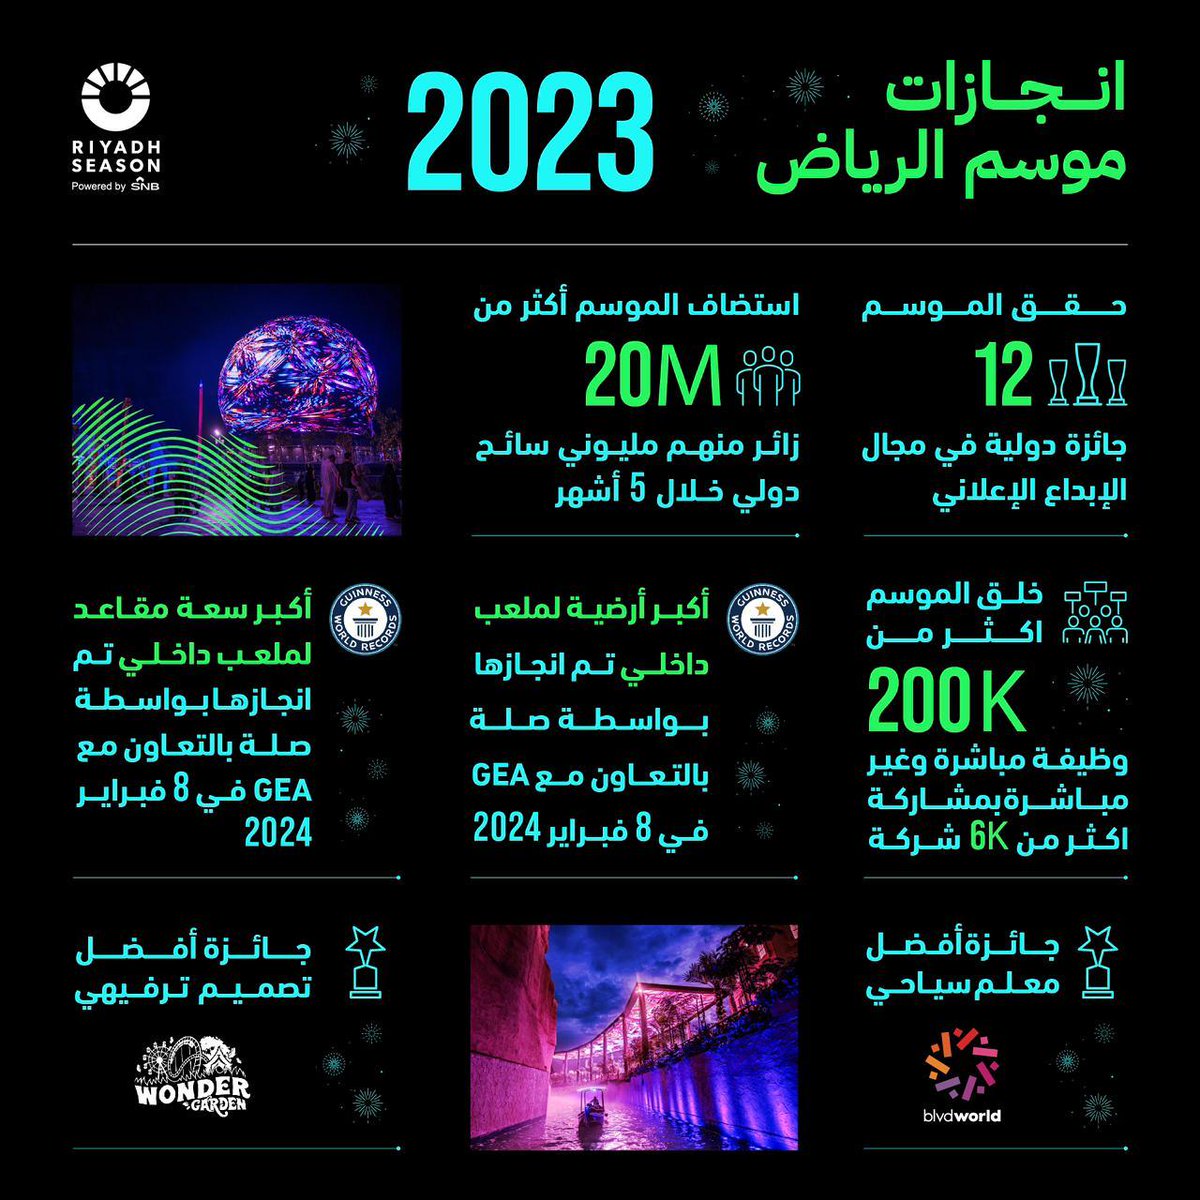 إنجازات #موسم_الرياض 2023 ارقام قياسية تحققها منصات التواصل الاجتماعي @Turki_alalshikh #موسم_الرياض #RiyadhSeason